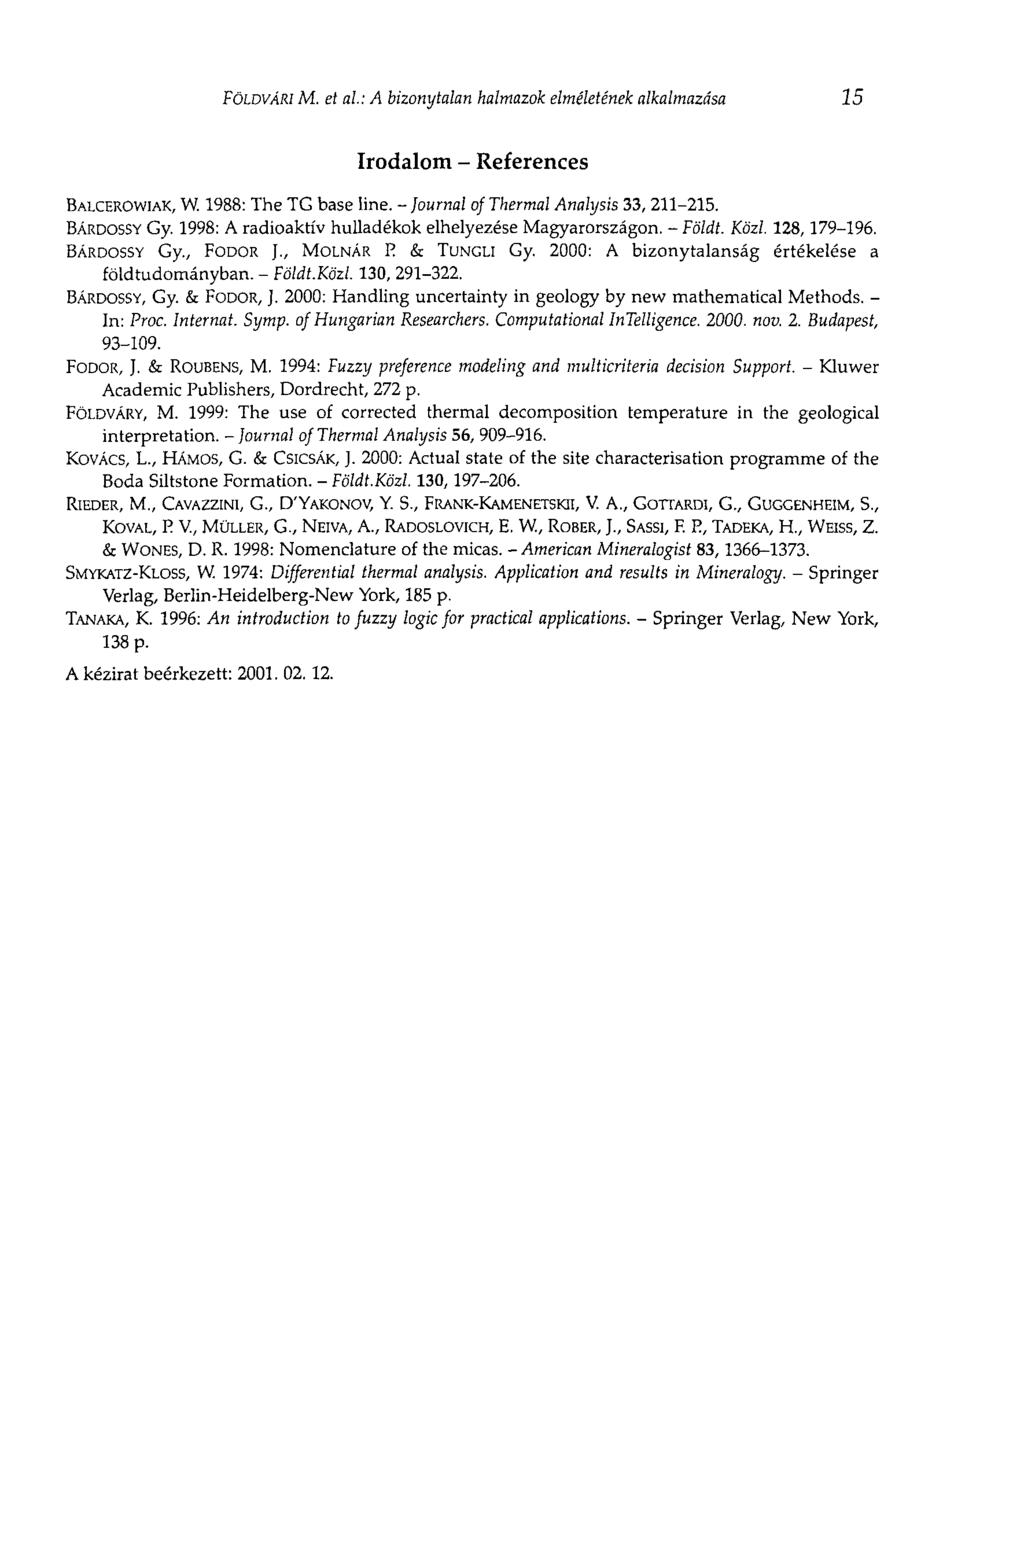 FÖLDVÁRI M. et al: A bizonytalan halmazok elméletének alkalmazása 15 Irodalom - References BALCEROWIAK, W. 1988: The TG base line. - journal of Thermal Analysis 33, 211-215. BARDOSSY Gy.